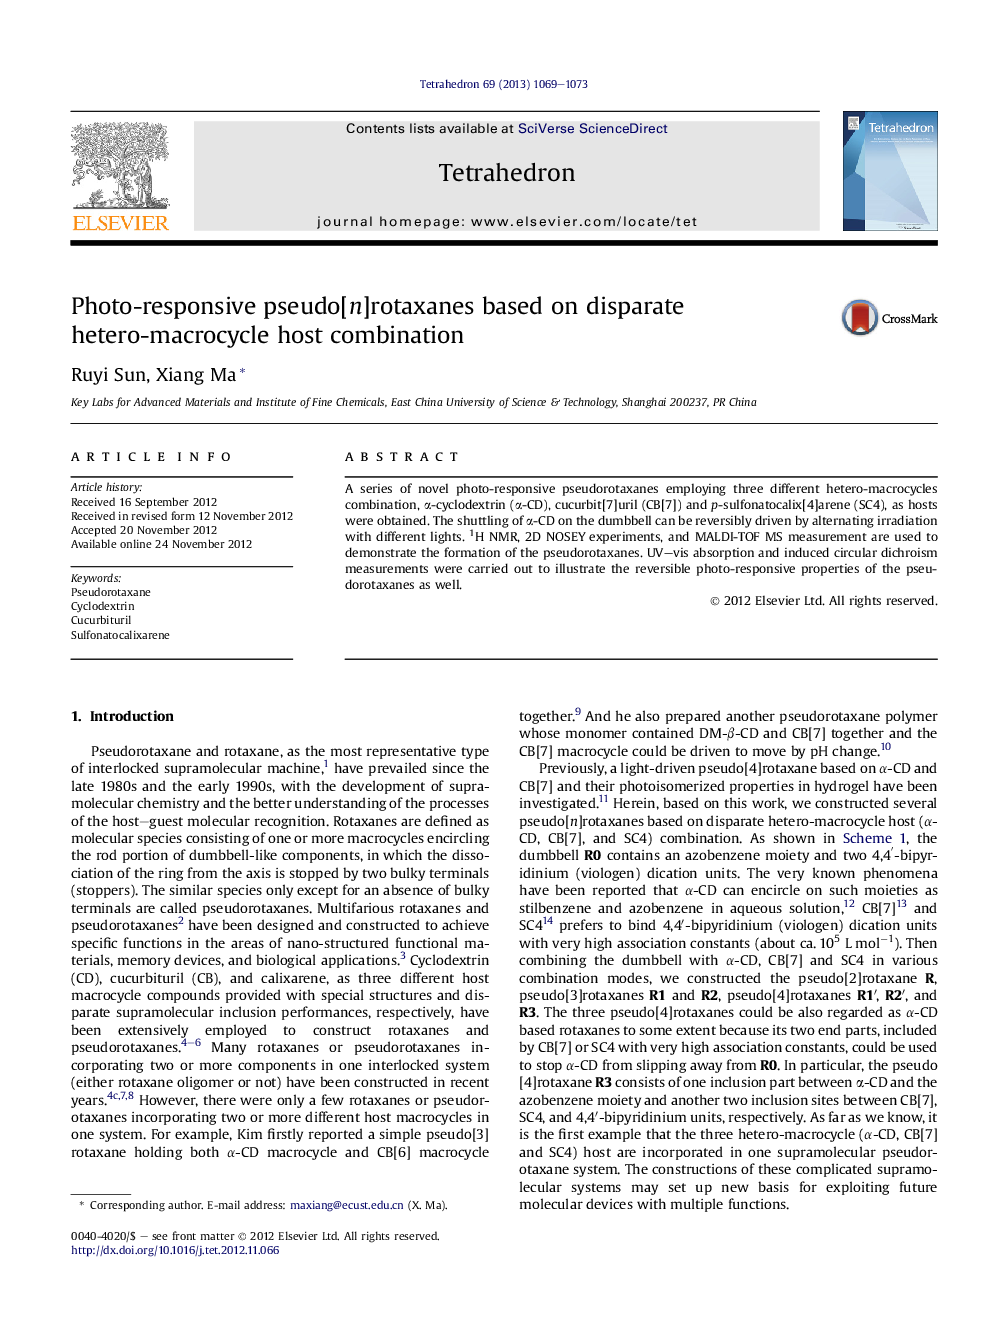 عکس العمل شبه نواحی روتاکسان بر اساس ترکیبی از میزبان هتروتروکروکسیلیک جداگانه 